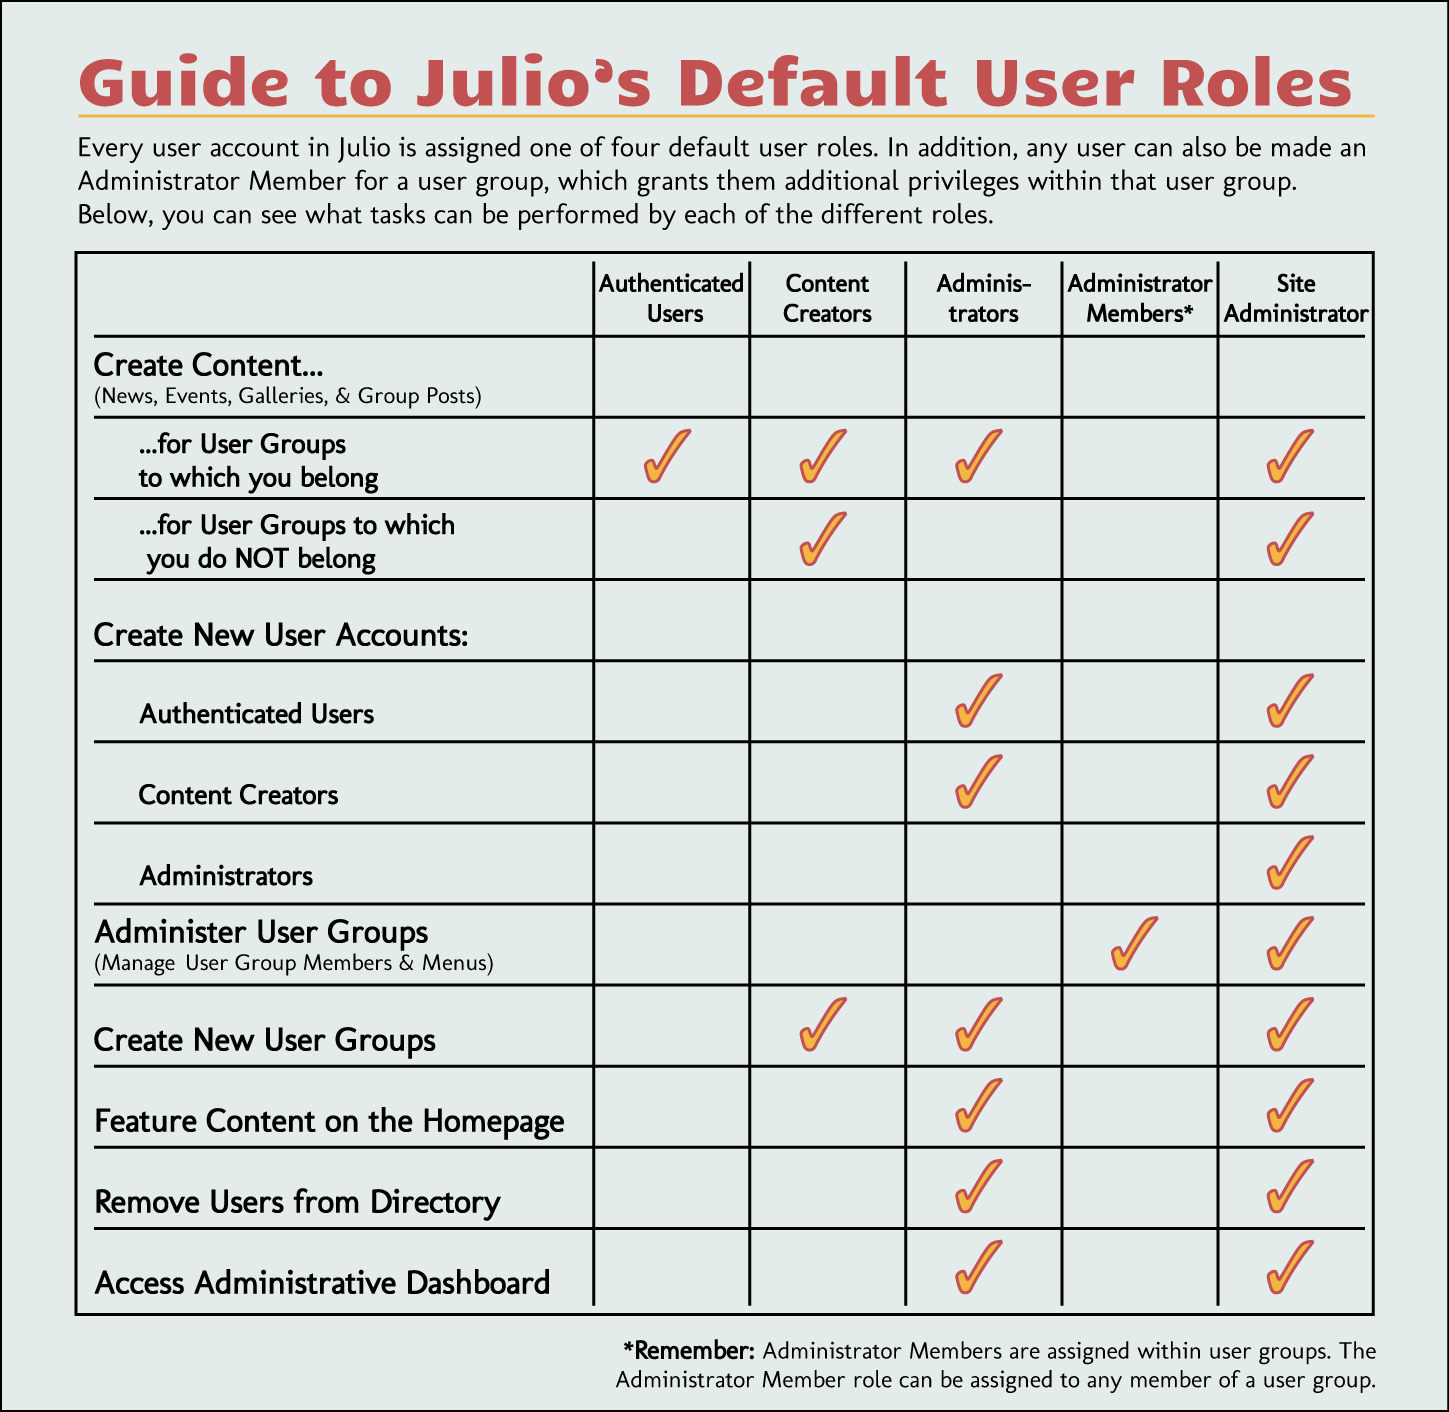 Julio - Default User Roles